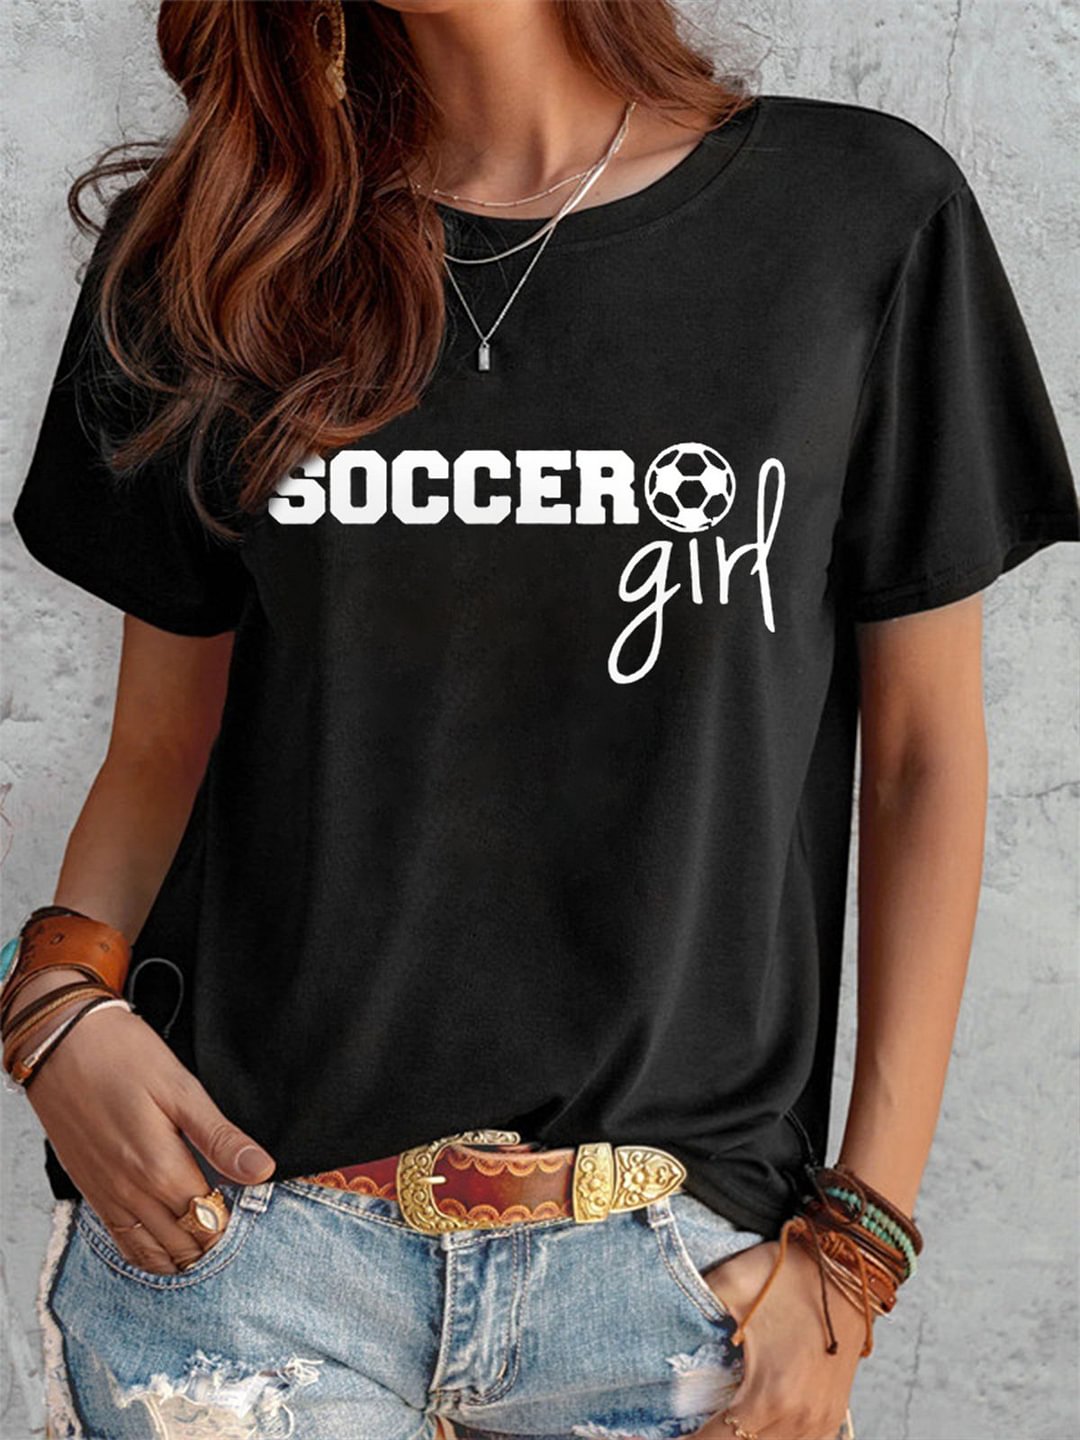 Soccer Girl Casual Cotton Tee